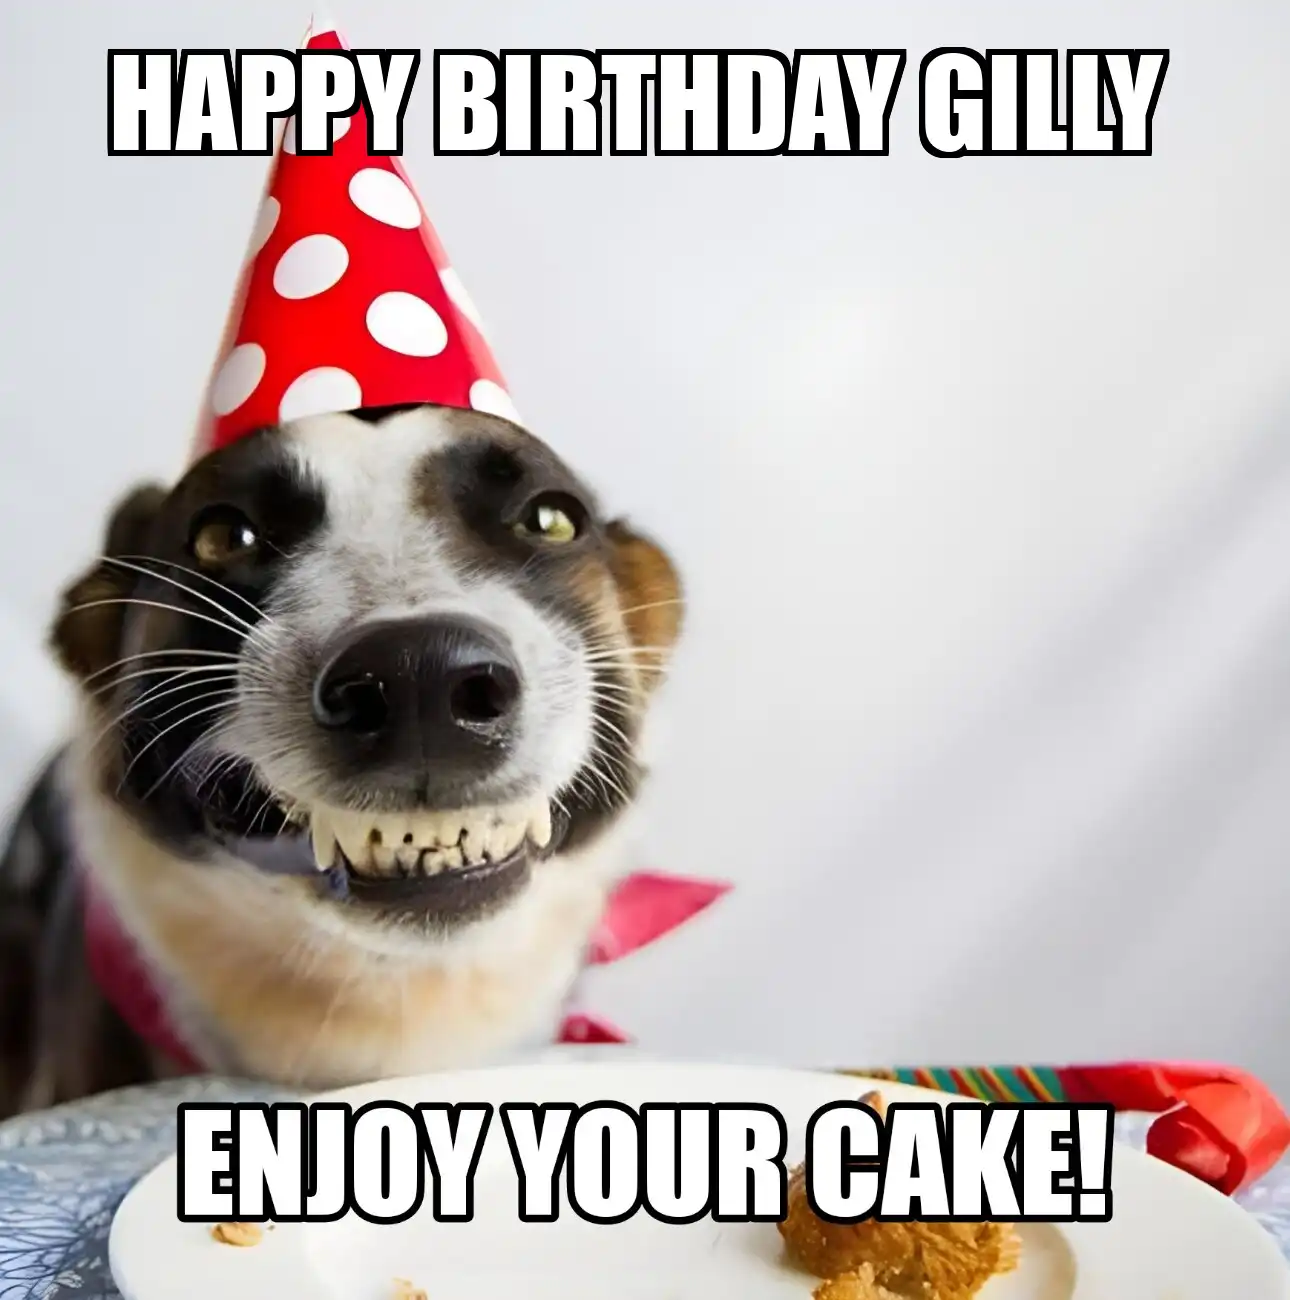 Happy Birthday Gilly Enjoy Your Cake Dog Meme